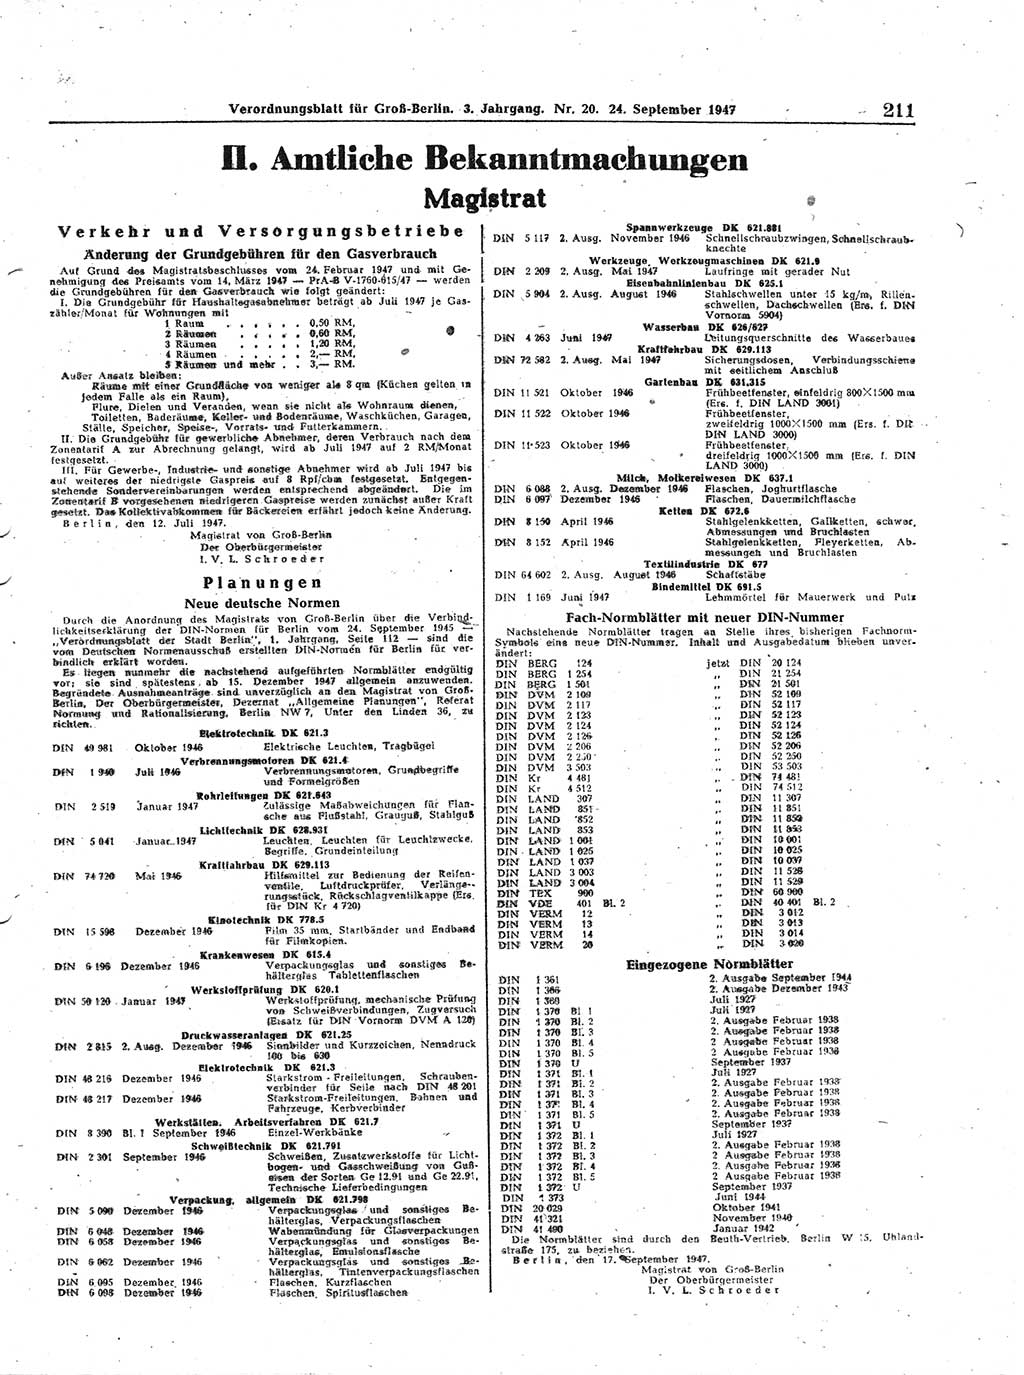 Verordnungsblatt (VOBl.) für Groß-Berlin 1947, Seite 211 (VOBl. Bln. 1947, S. 211)